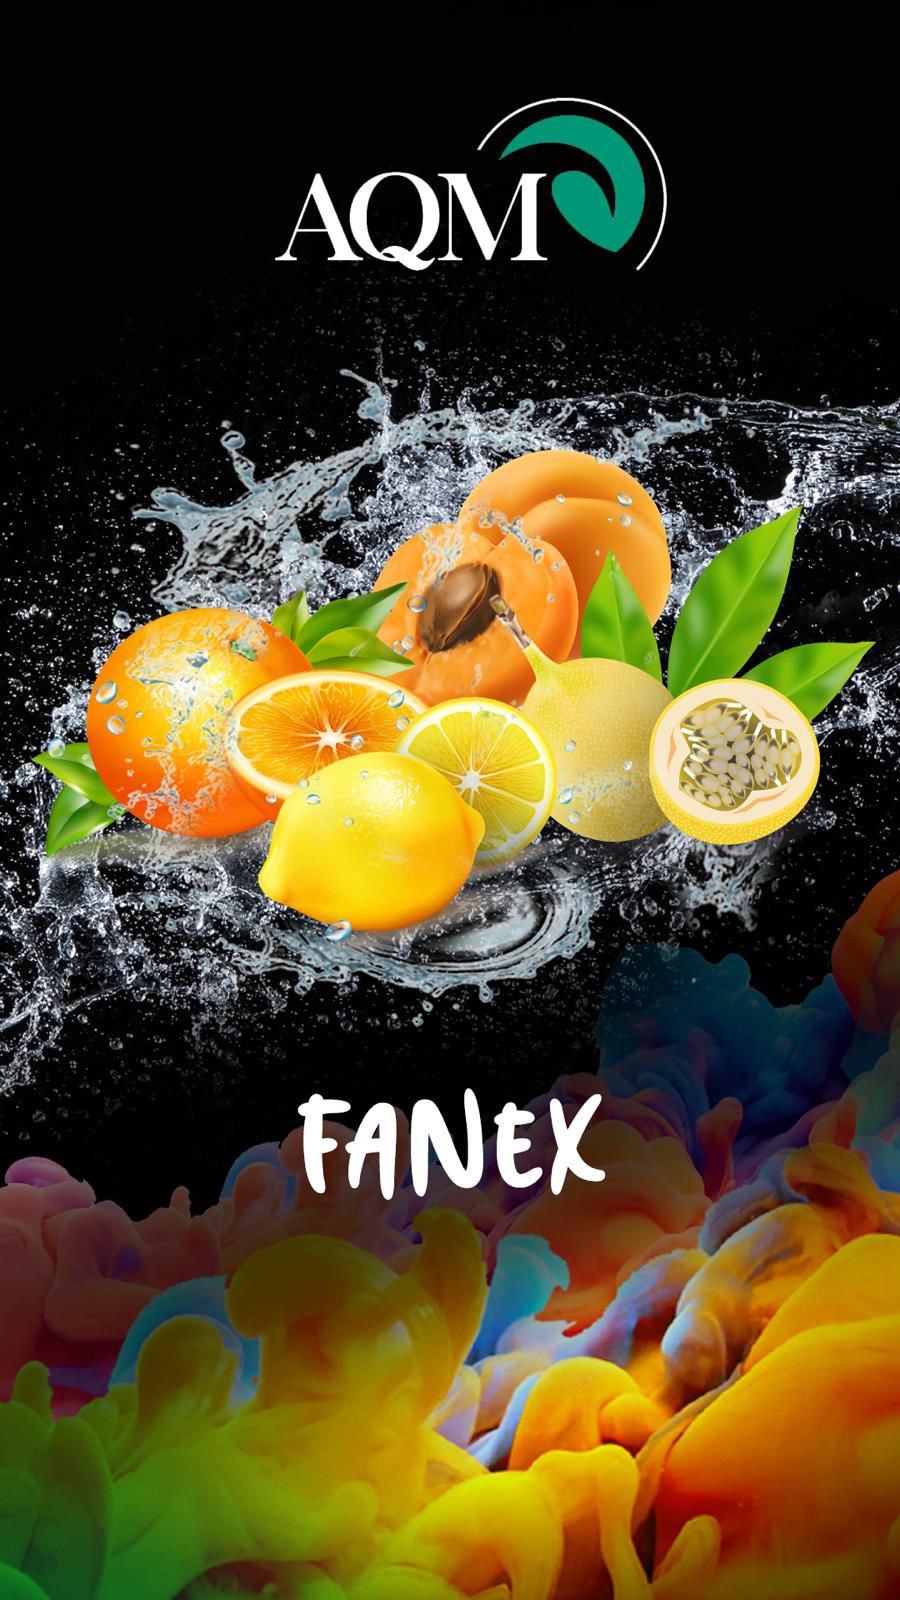 Fanex (7) | Aqua Mentha